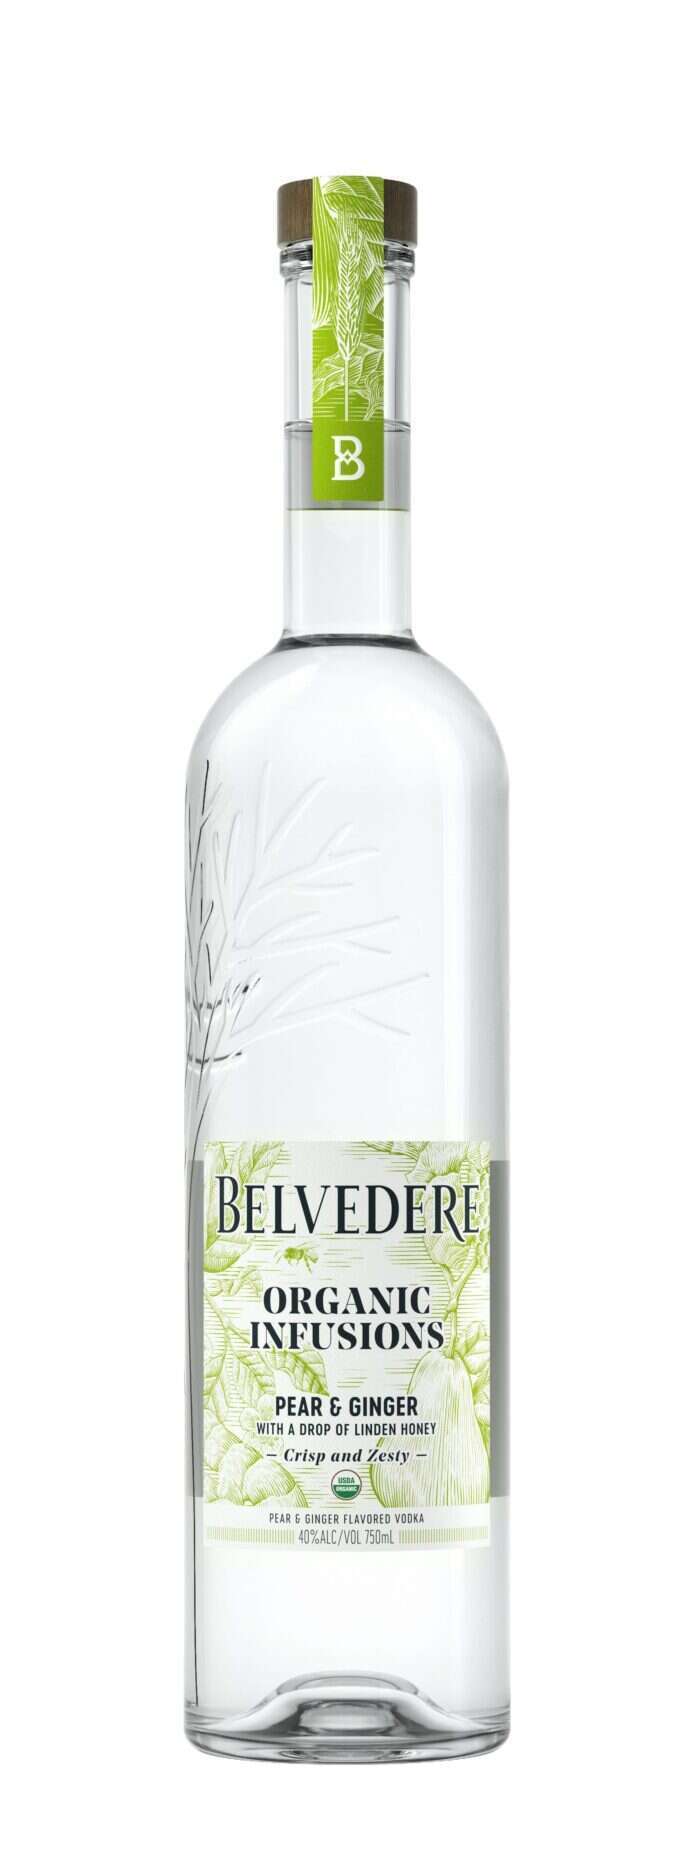 Belvedere bottle